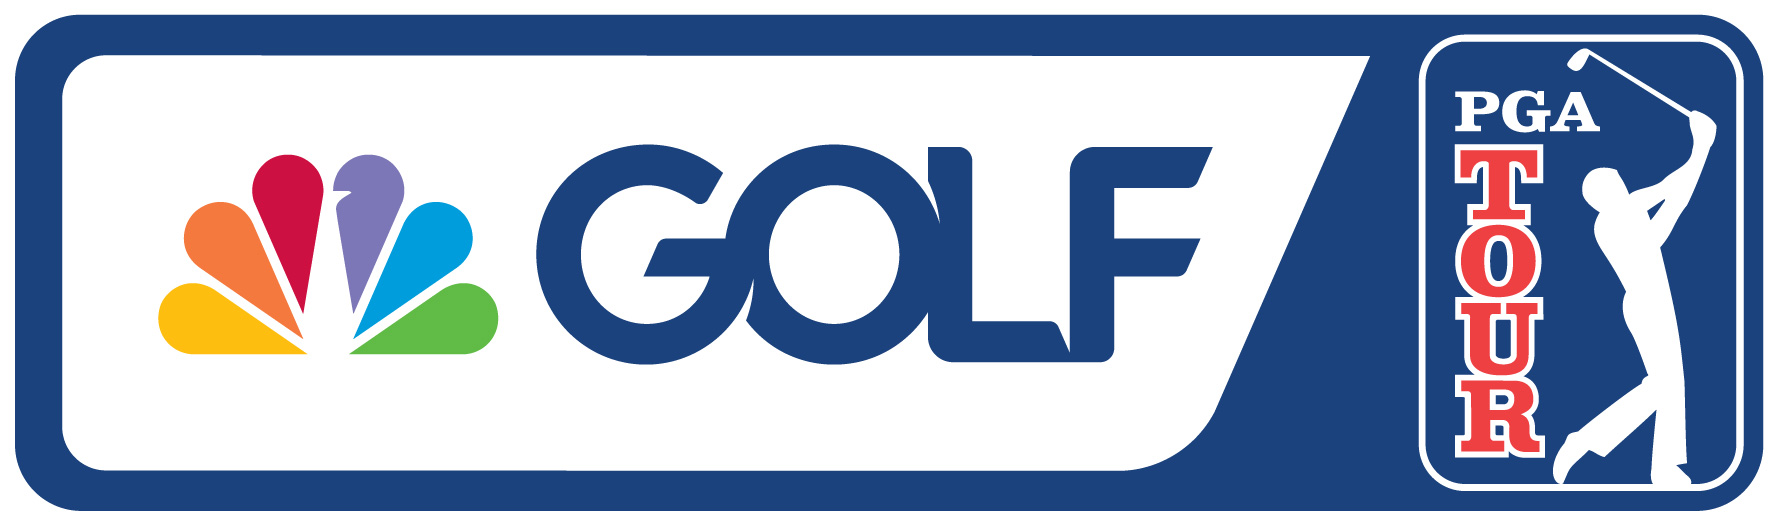 NBC SPORTS ANNOUNCES 2023 PGA TOUR BROADCAST SCHEDULE